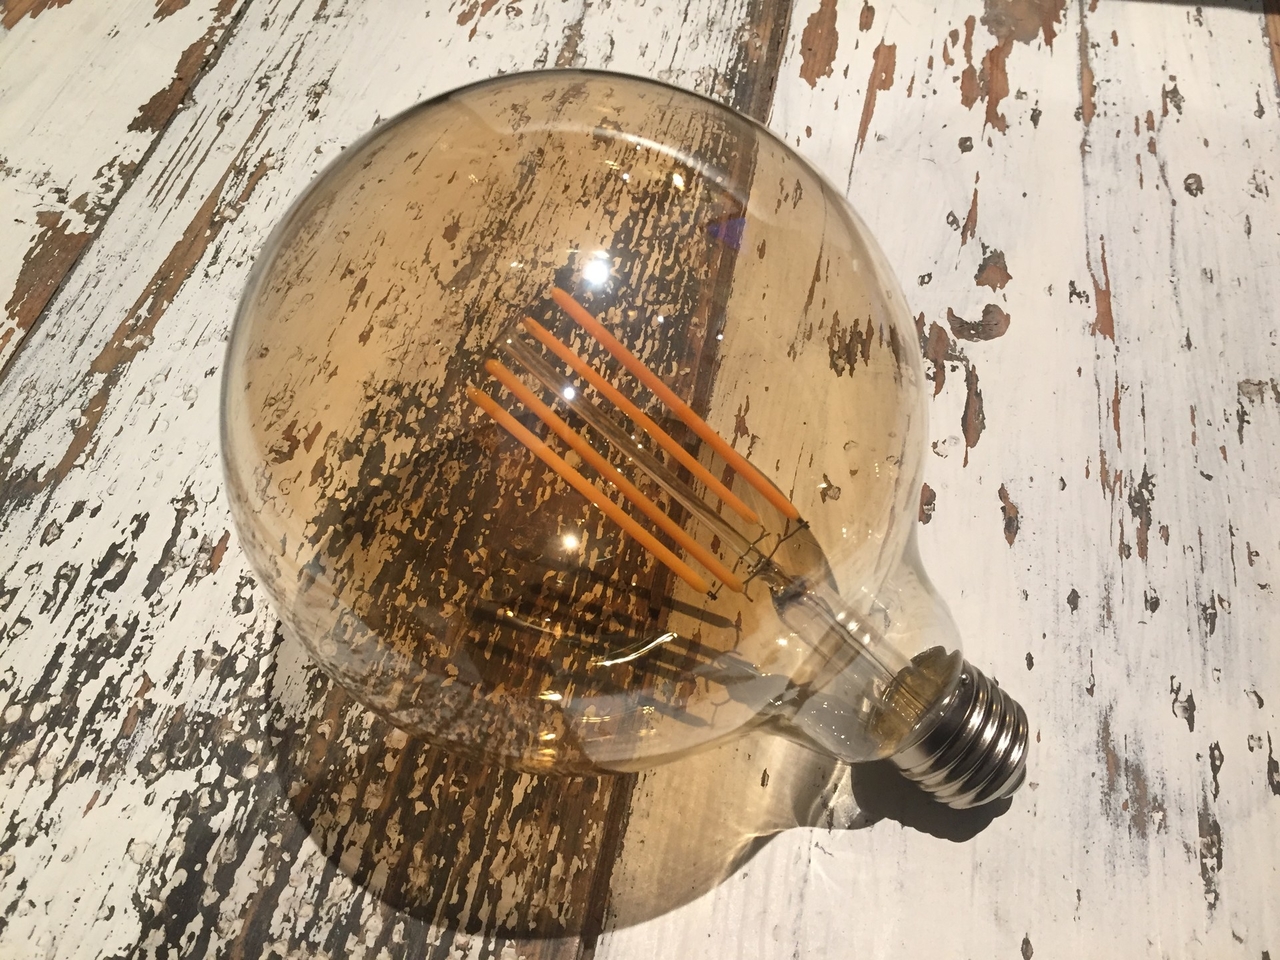 Sandy Gooi Verstrikking Bestel hier uw Grote Bol/Globe Bol LED lampen - Hoogste Kwaliteit -  ThatsLed.nl - Unieke kwaliteit led verlichting